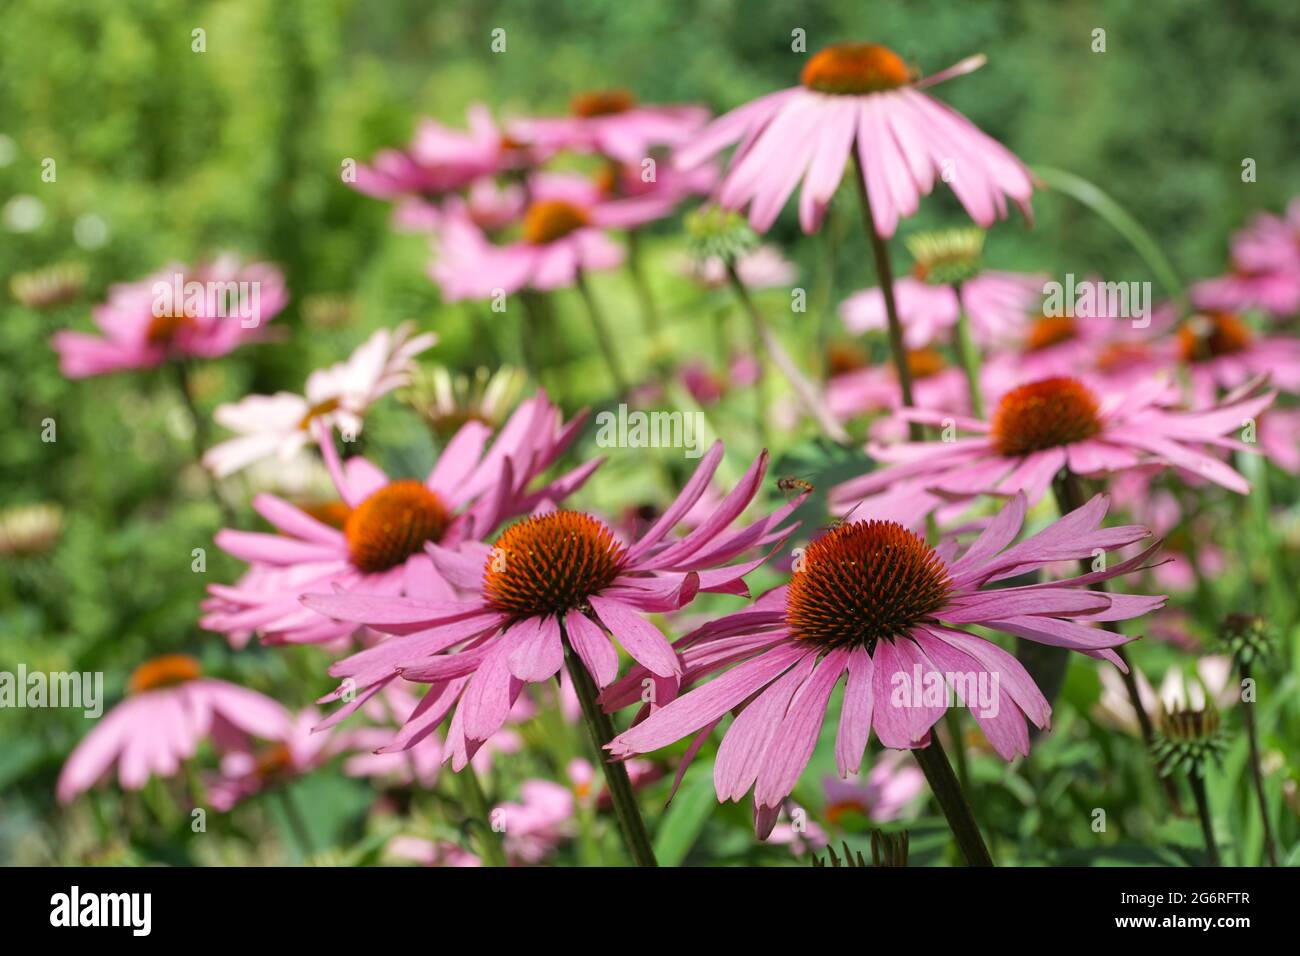 Gruppe von Echinacea-Blüten. Echinacea purpurea. Unscharfer Hintergrund. Große lila und orange Blüten von Koneflower. Fliegende Wespen. Selektiver Fokus. Stockfoto